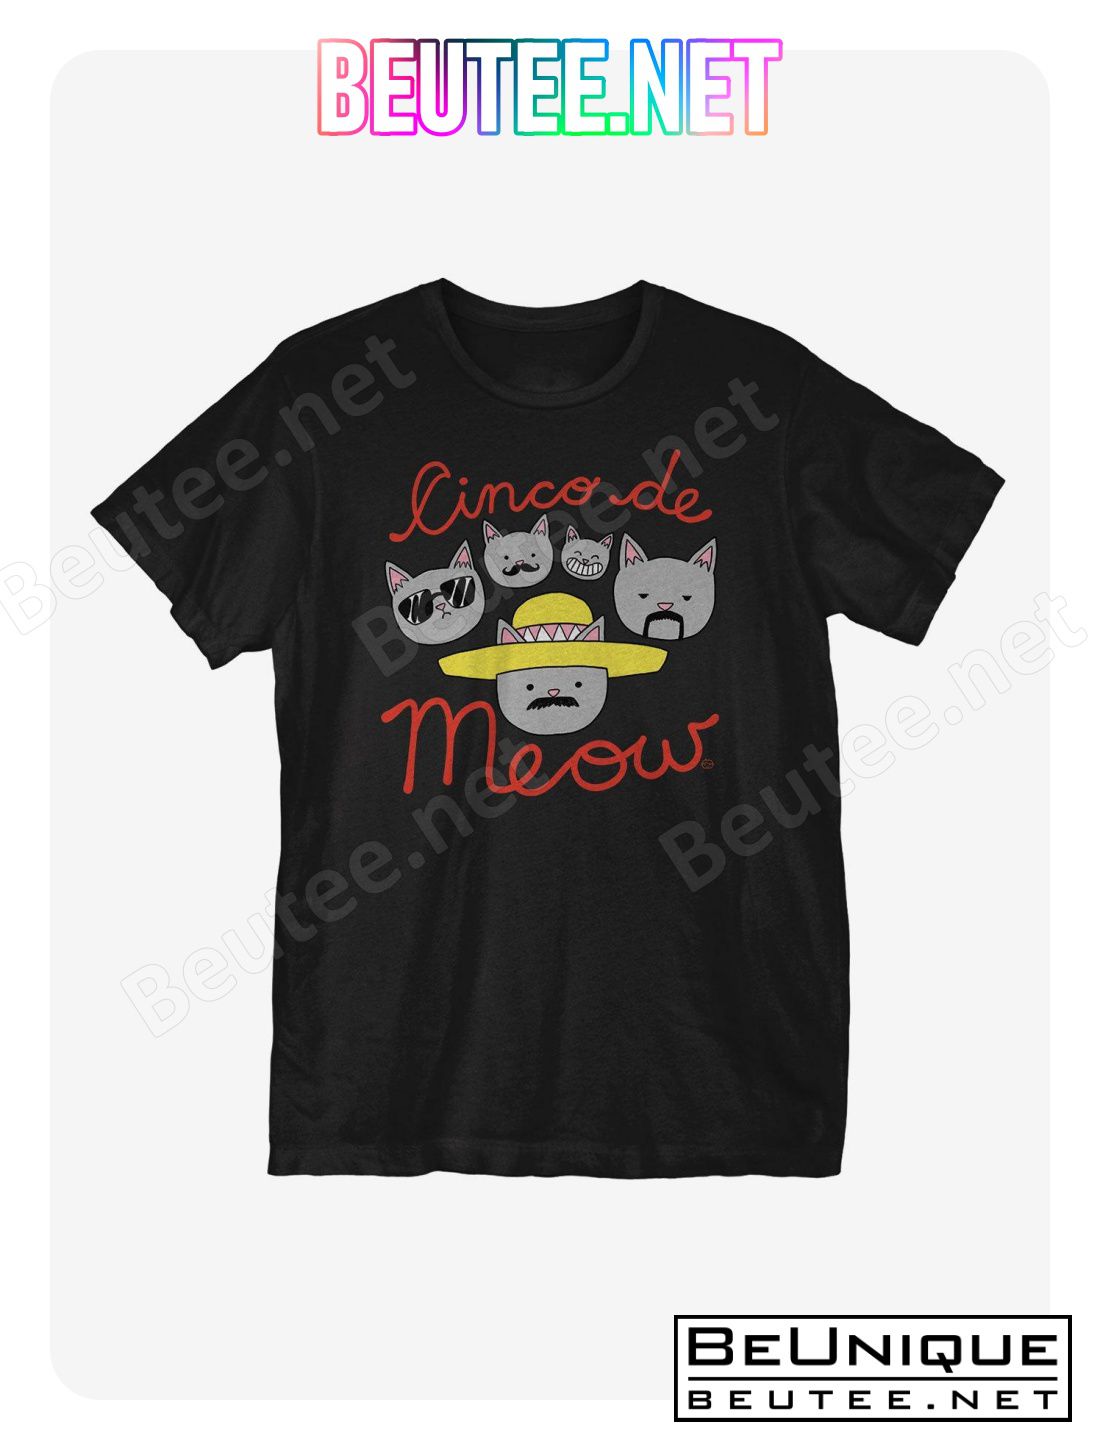 Cinco De Meow T-Shirt